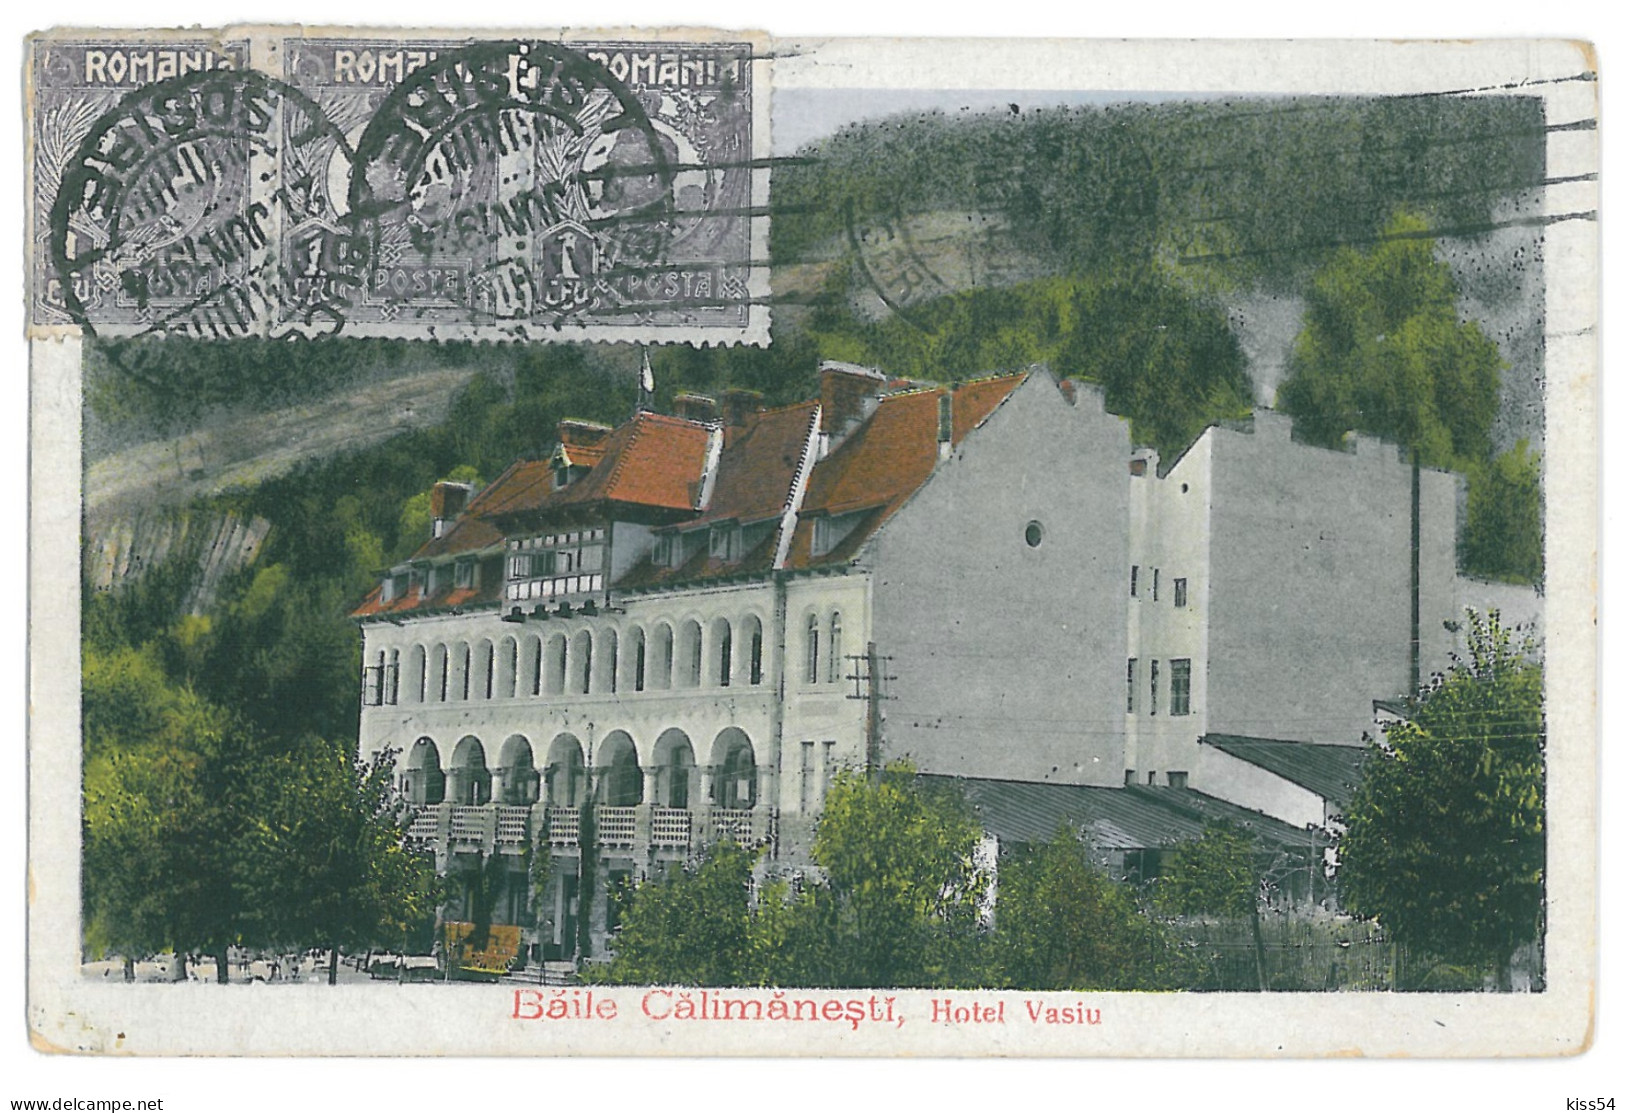 RO 68 - 11993 CALIMANESTI, Valcea, Romania - Old Postcard - Used - 1924 - TCV - Rumänien